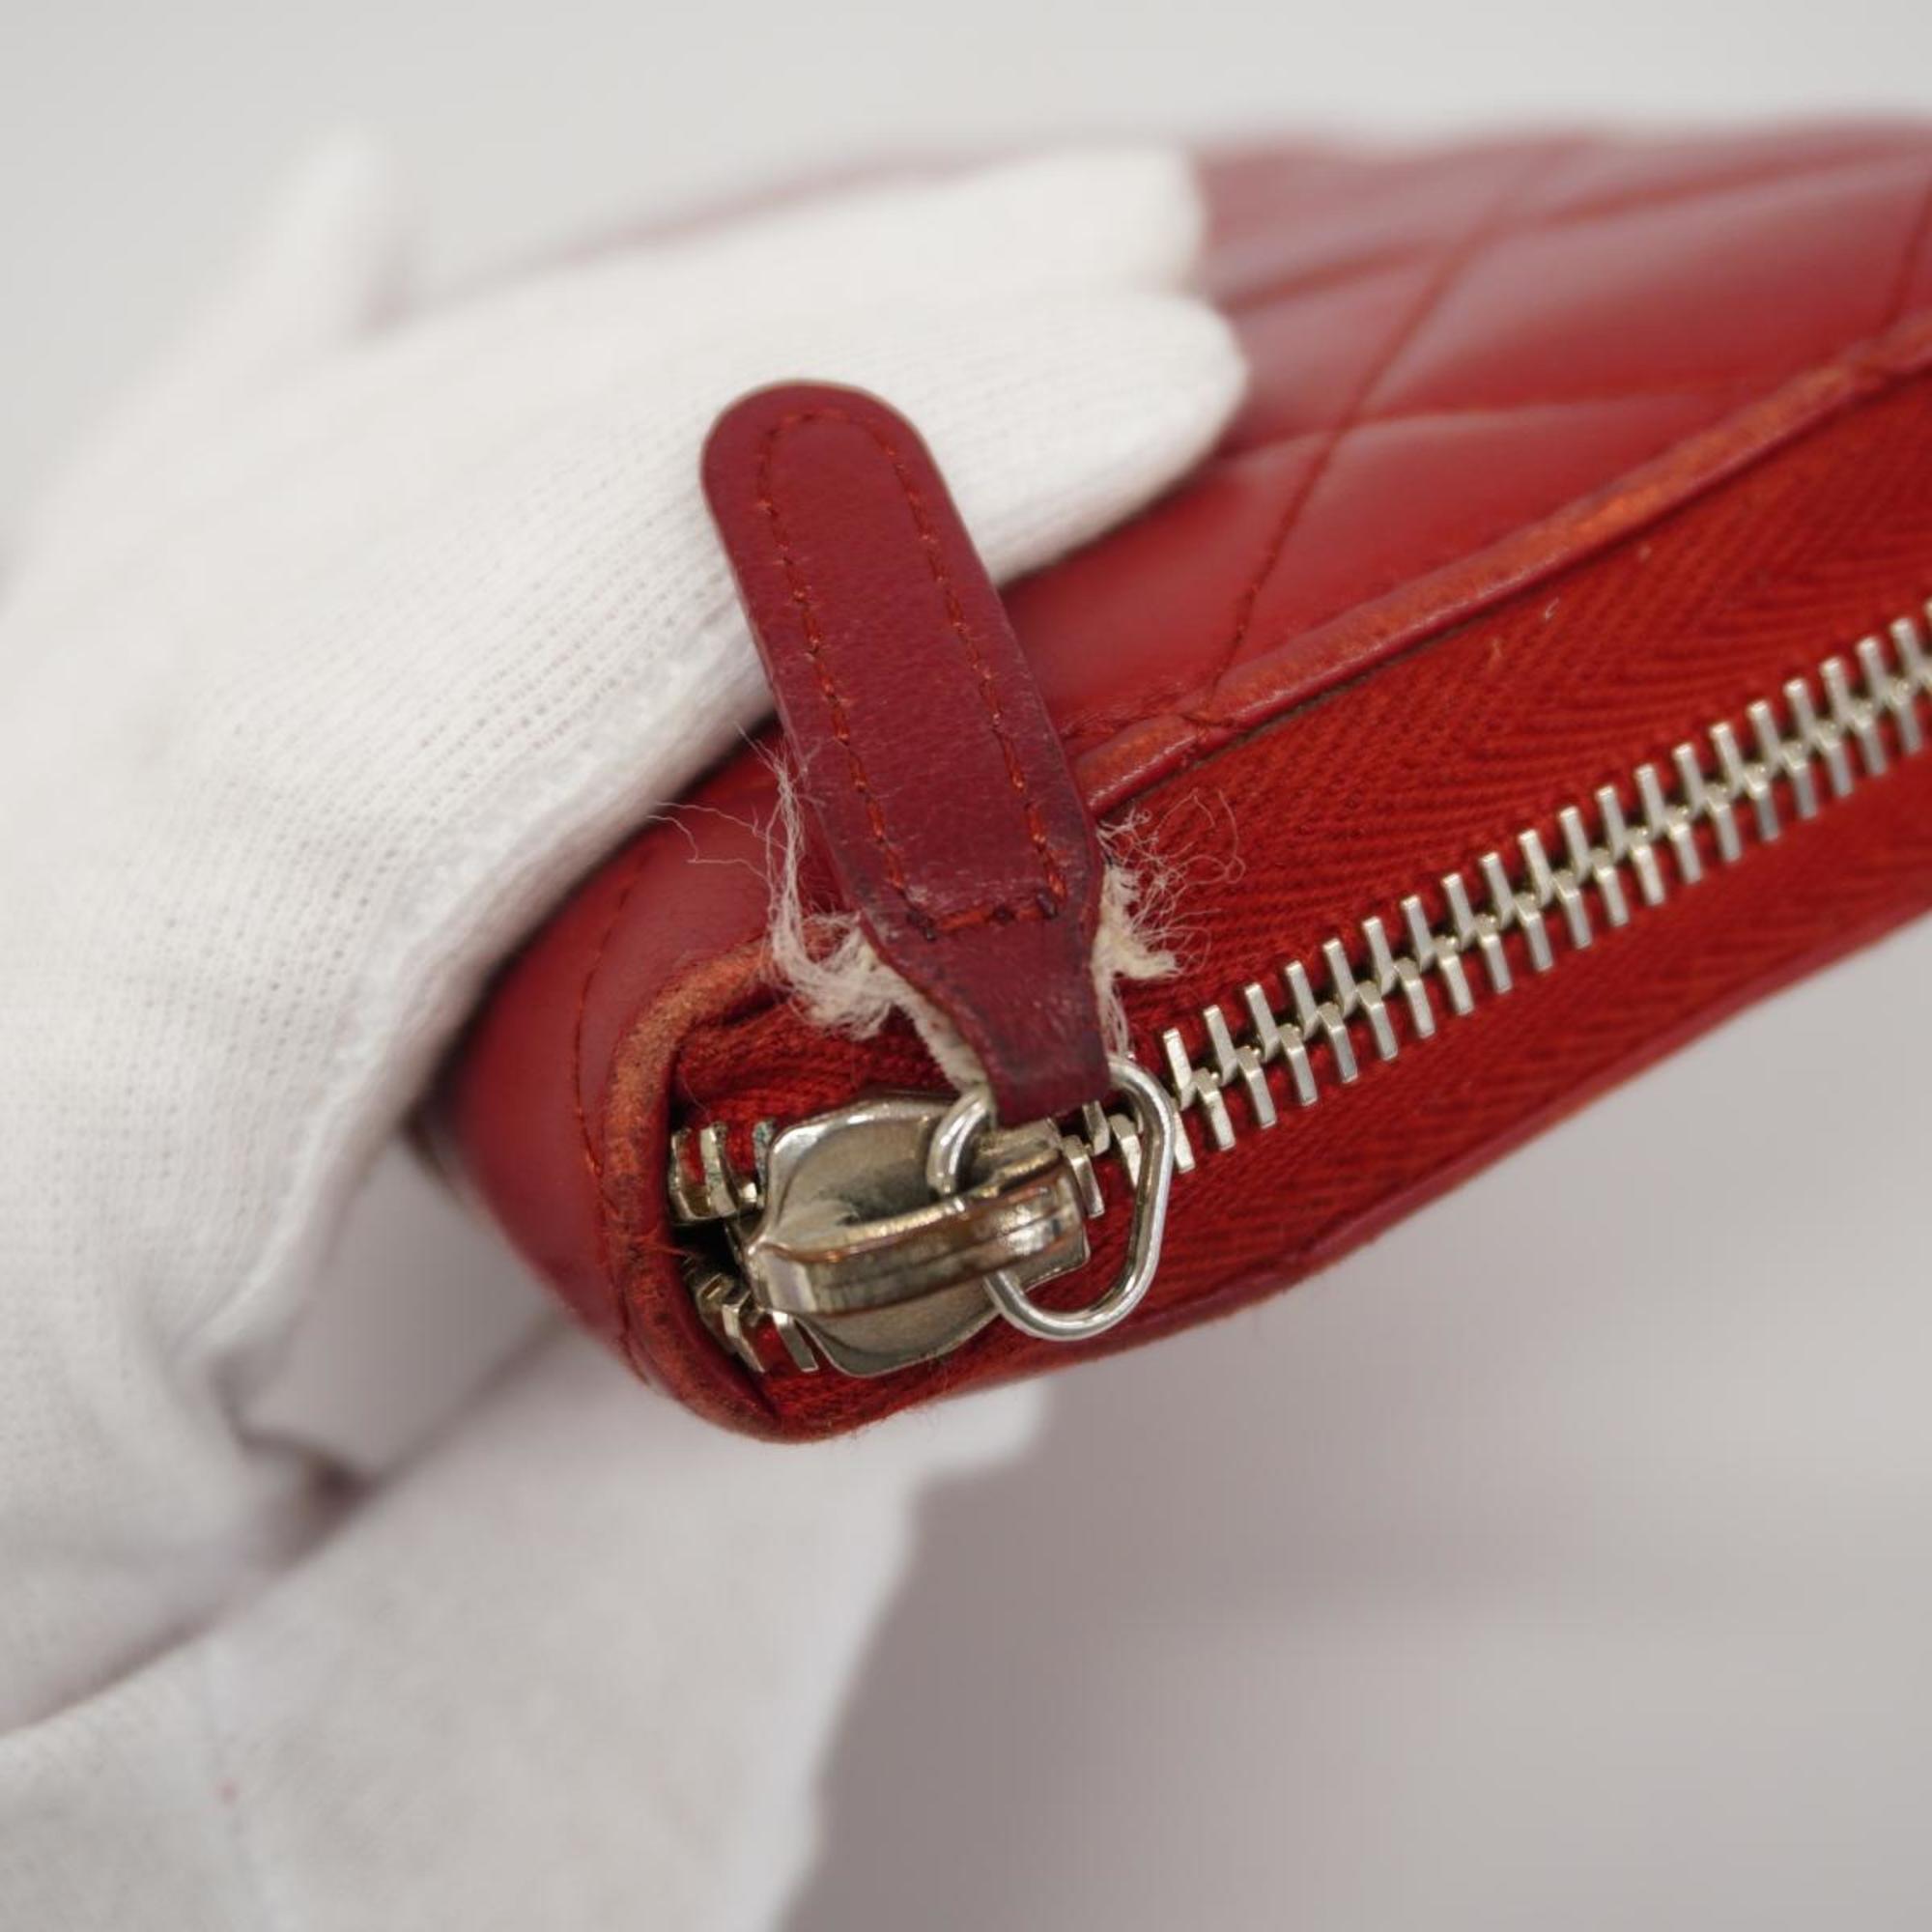 Chanel Long Wallet Matelasse Lambskin Red Women's